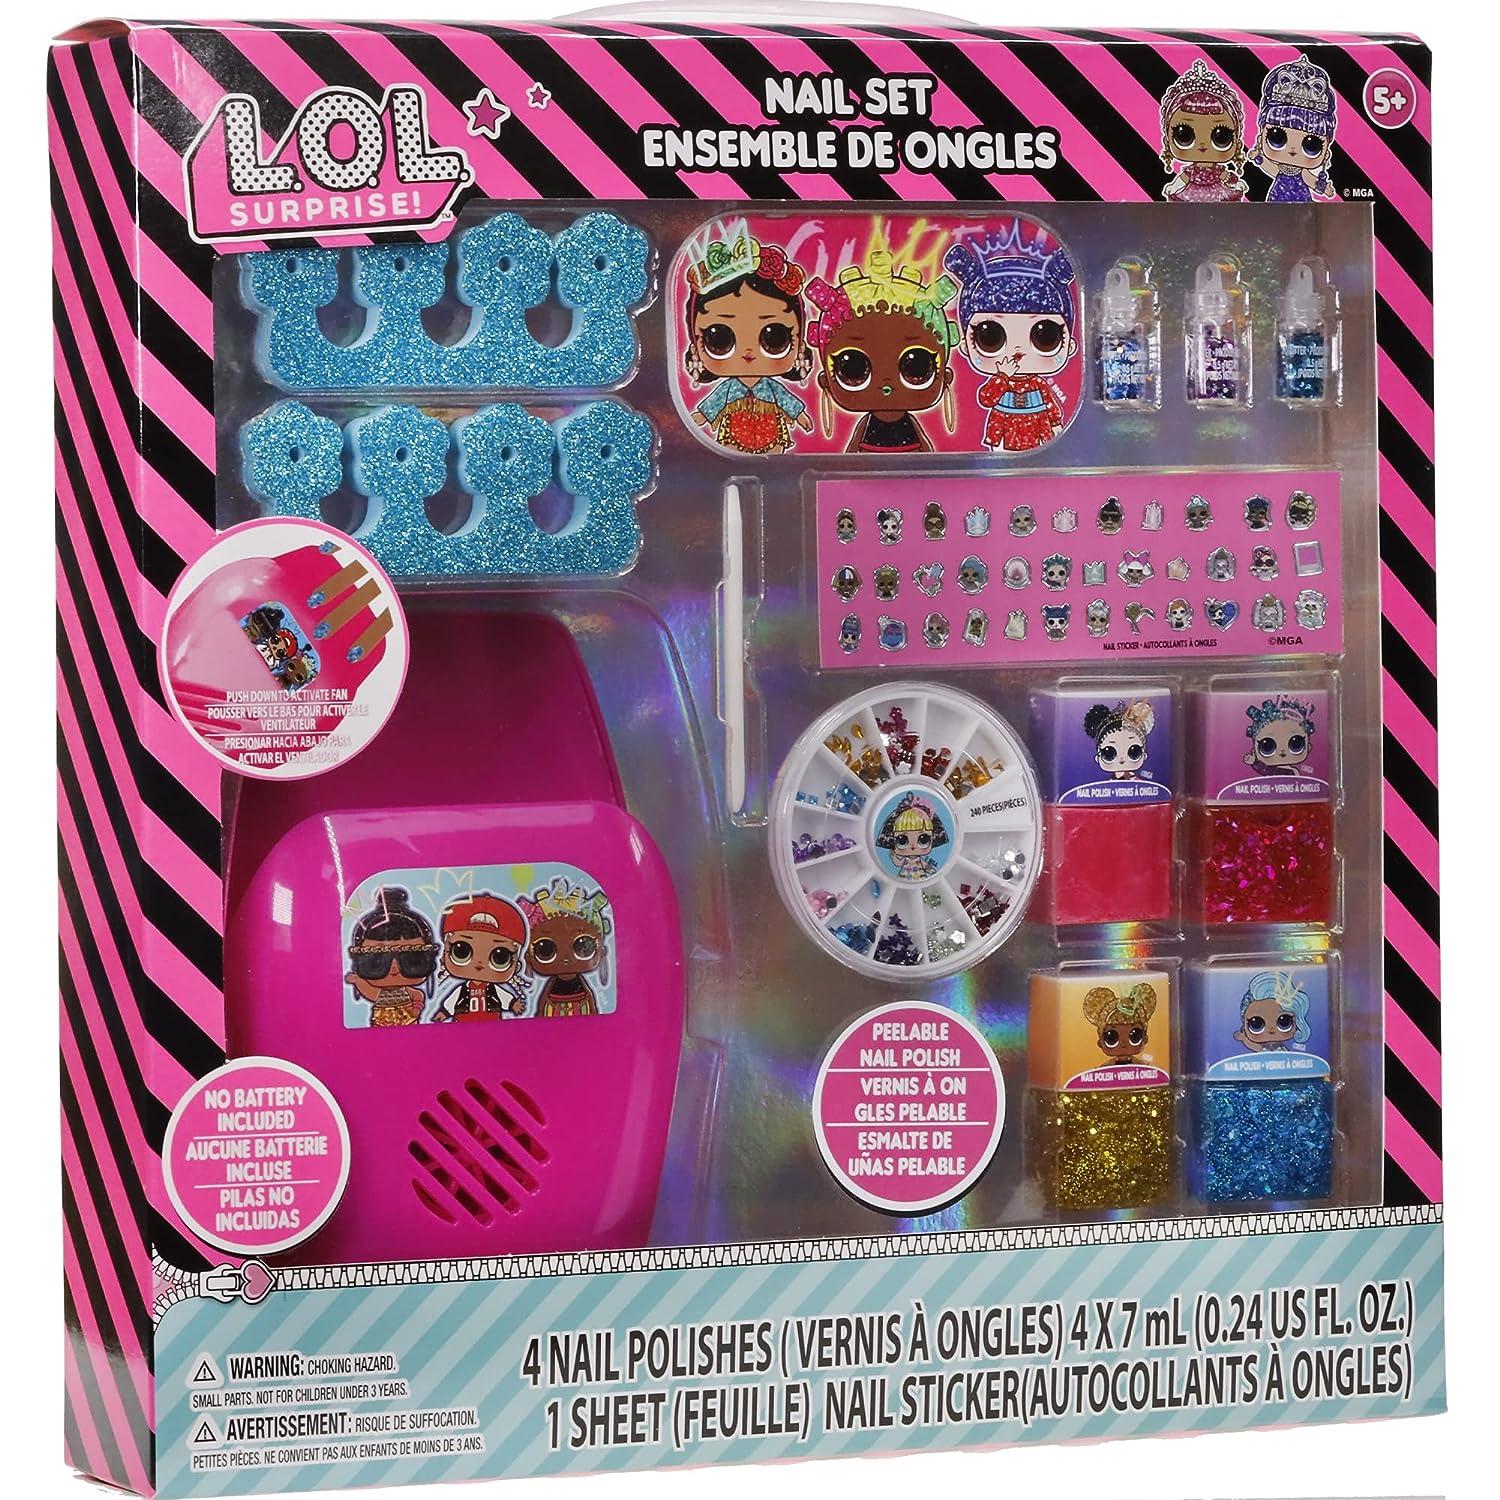 Toys League Small Nail Art Kit For Girls (set Of 3) at Rs 249.00, Nail Art  Kit